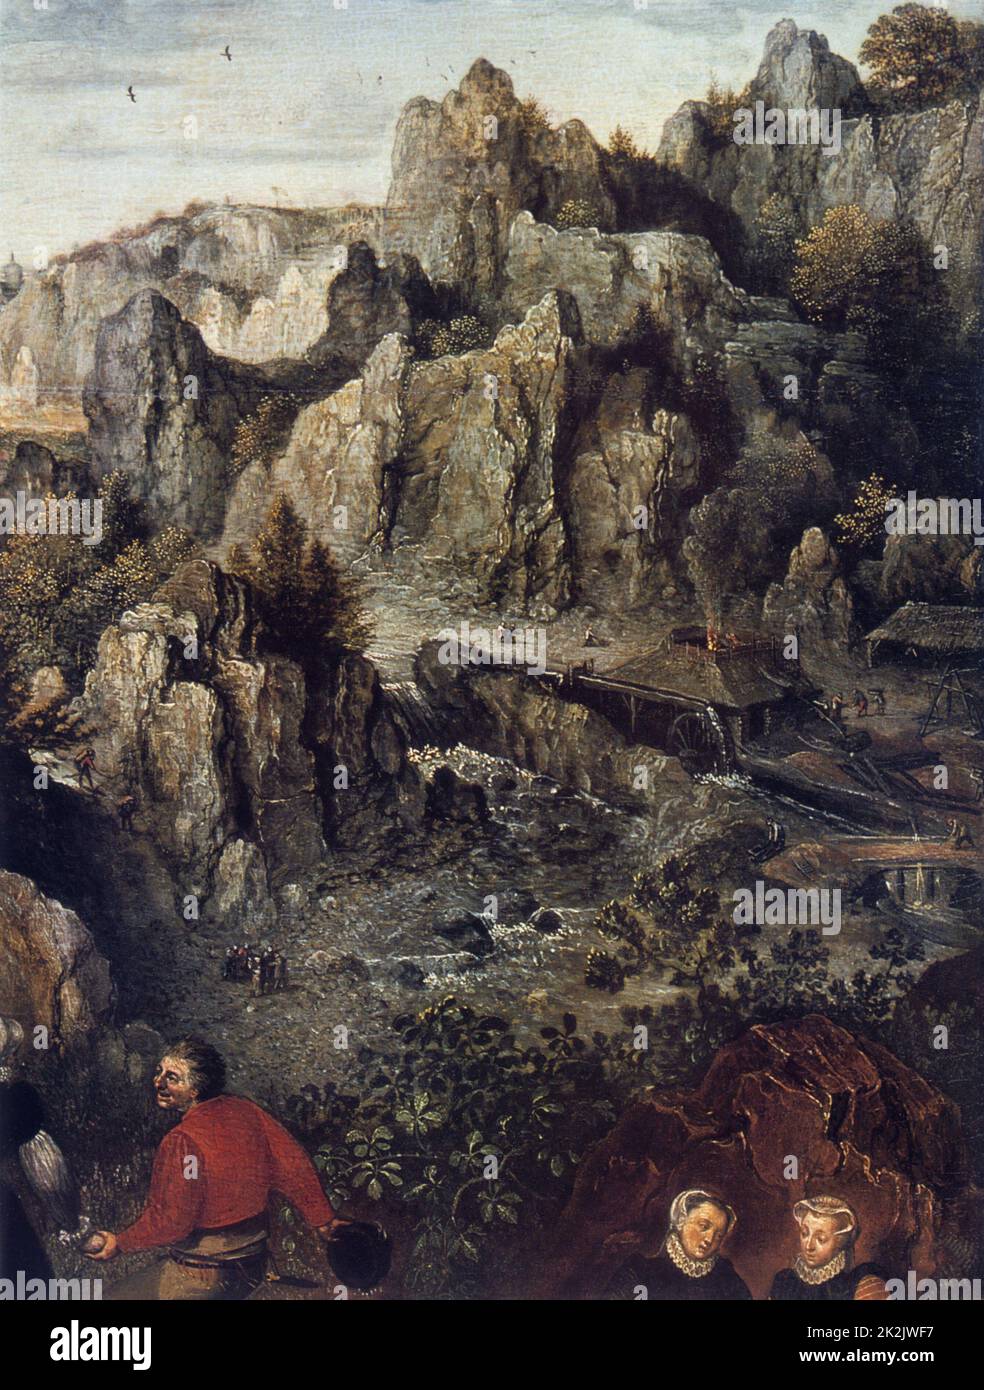 Lucas van Valckenborch Ecole flamande Paysage avec un Festival rural (détail de la partie supérieure droite) 1588-1592 huile sur toile (49 x 73 cm) Saint-Pétersbourg, musée de l'Ermitage Banque D'Images